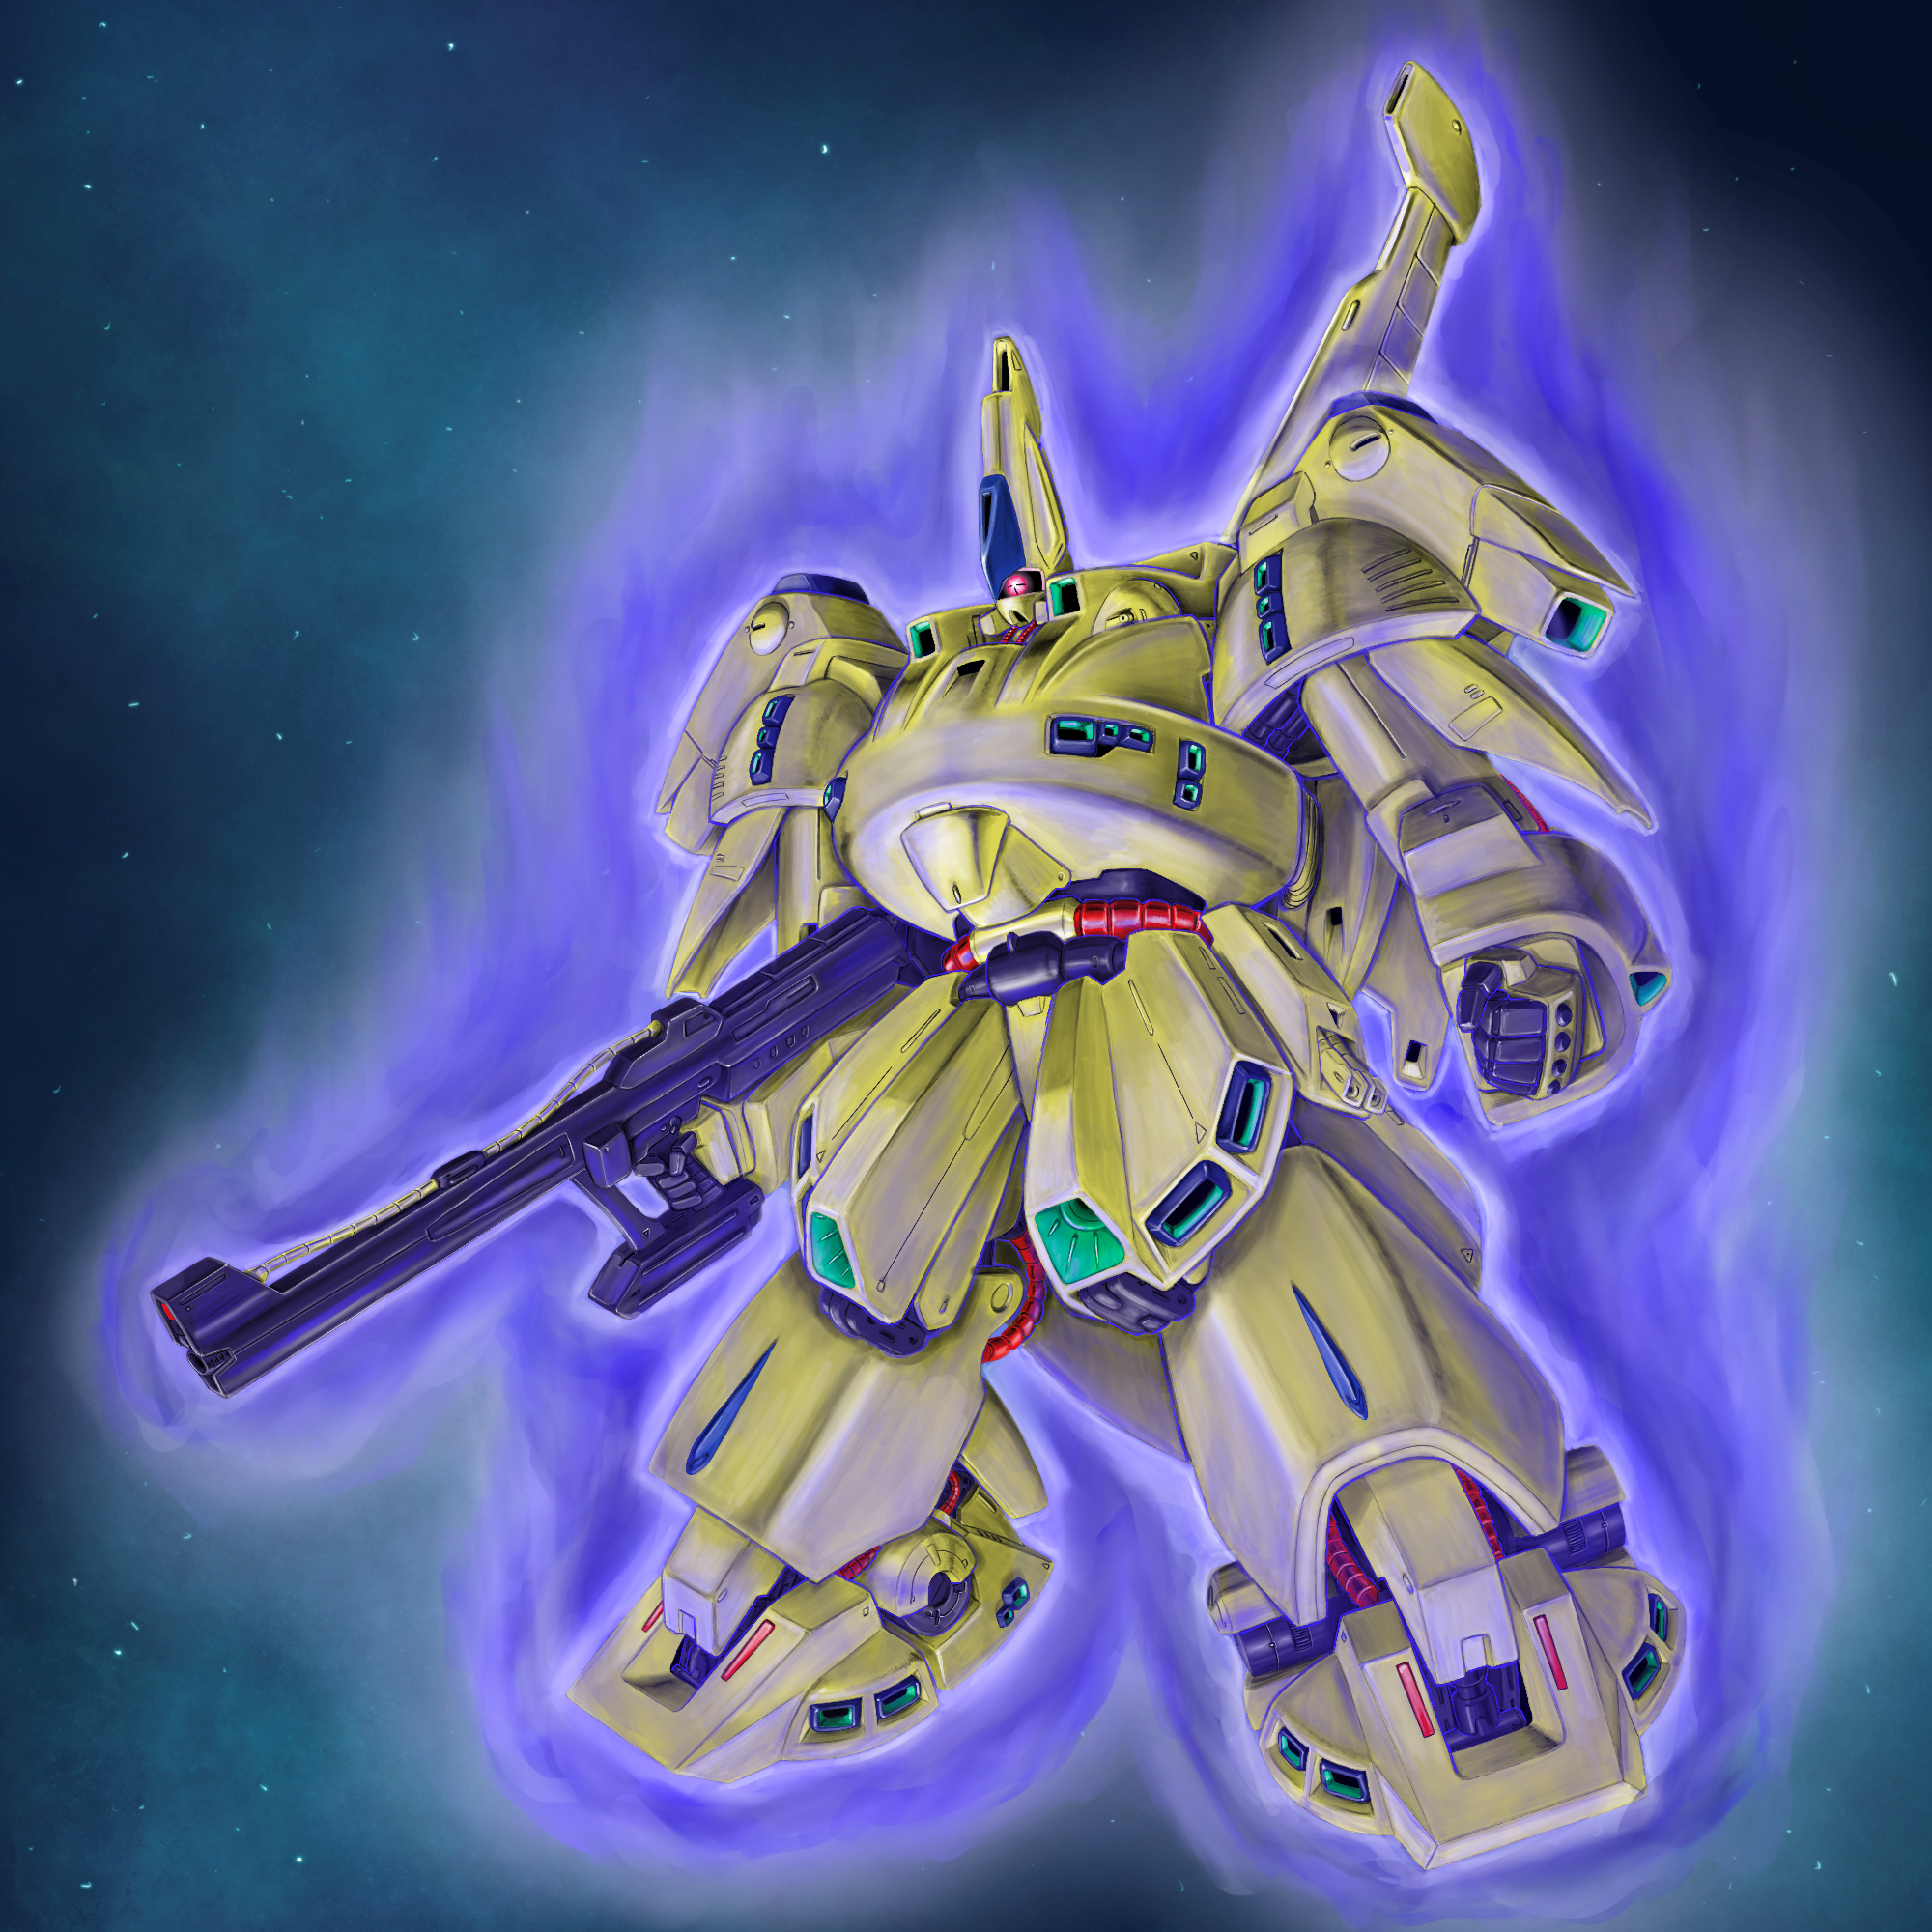 Anime 2000x2000 The-O Mobile Suit Zeta Gundam Mobile Suit anime mechs Super Robot Taisen artwork digital art fan art